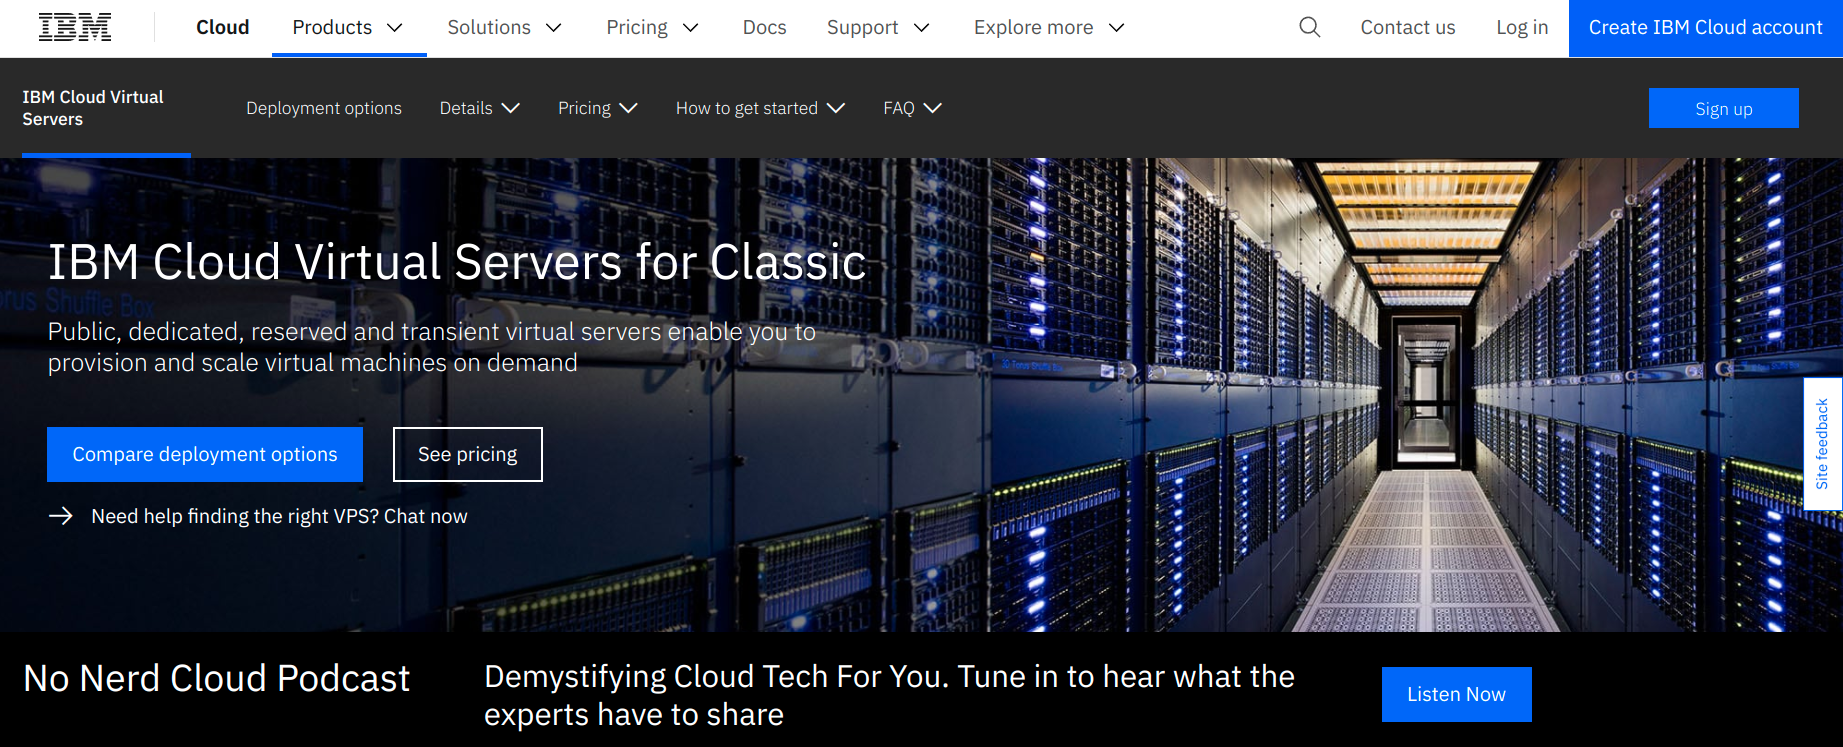 IBM Cloud virtual servers